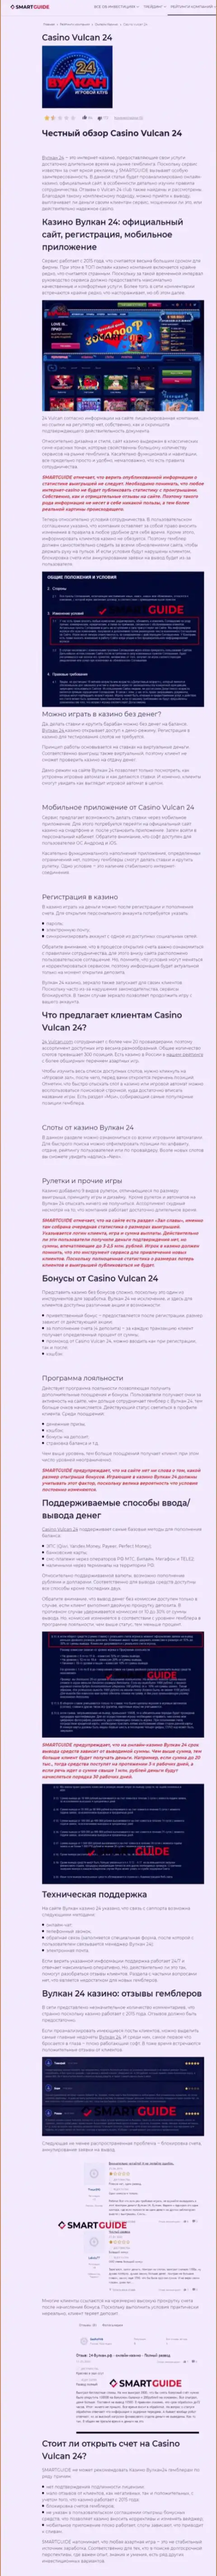 Вулкан 24 - это контора, зарабатывающая на грабеже финансовых средств своих клиентов (обзор)